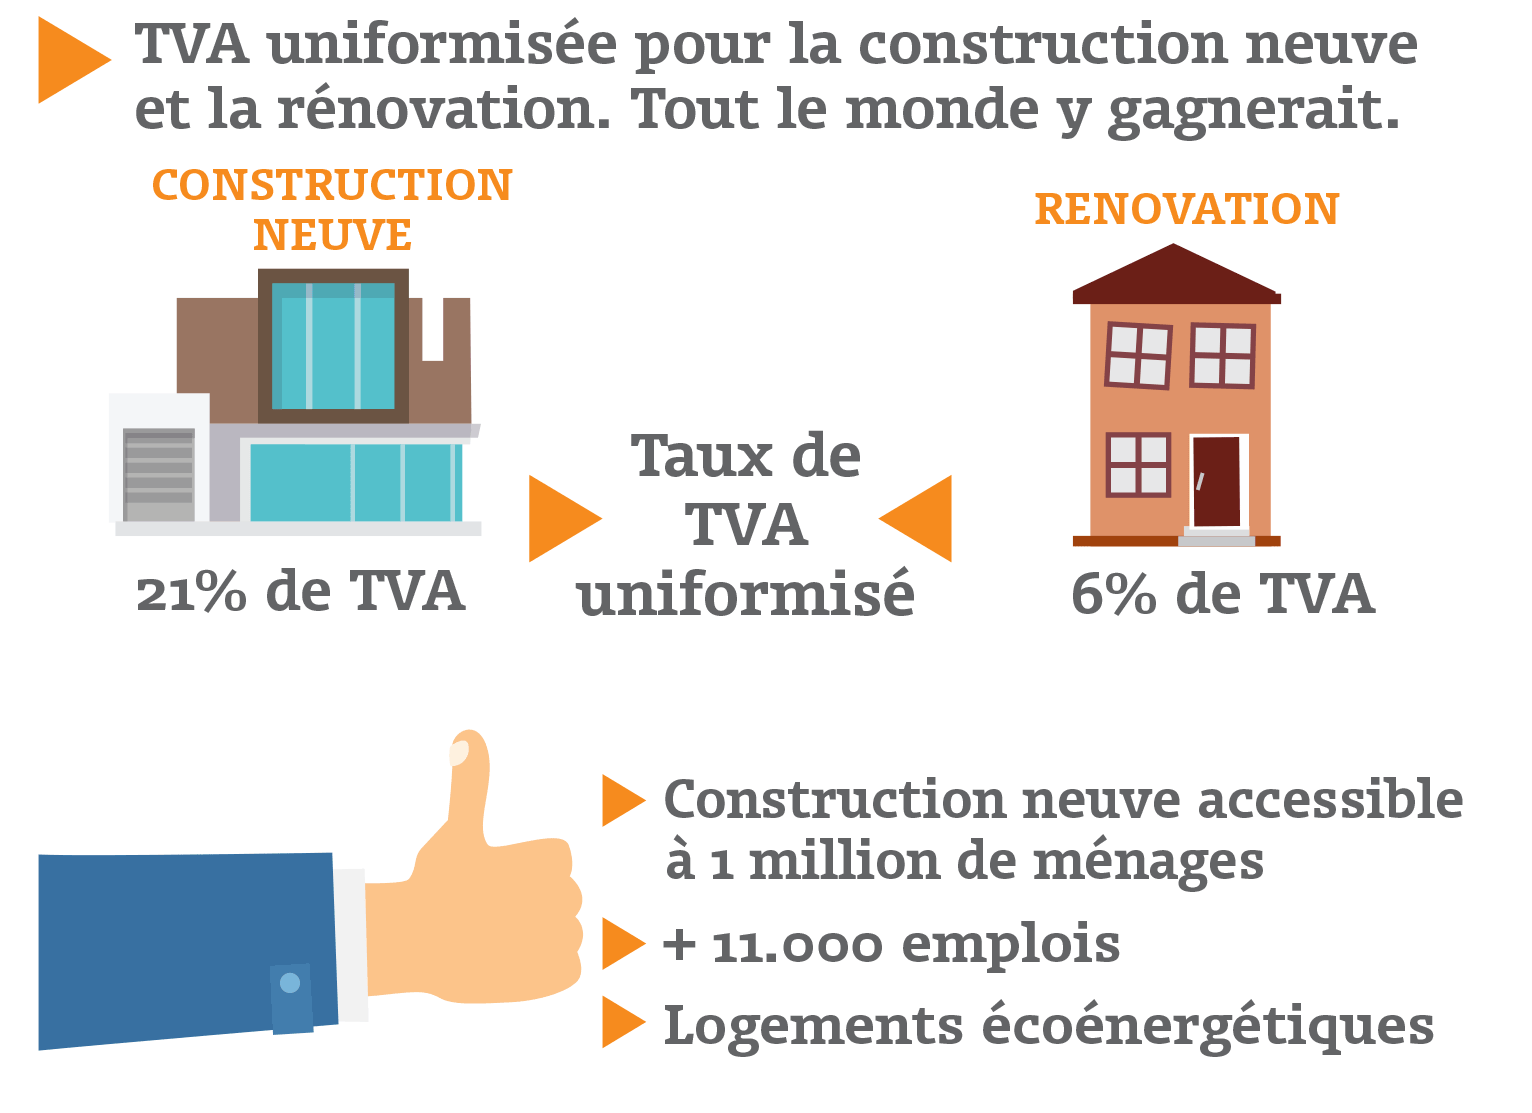 TVA uniformisée pour la construction neuve et la rénovation. Tout le monde y gagnerait